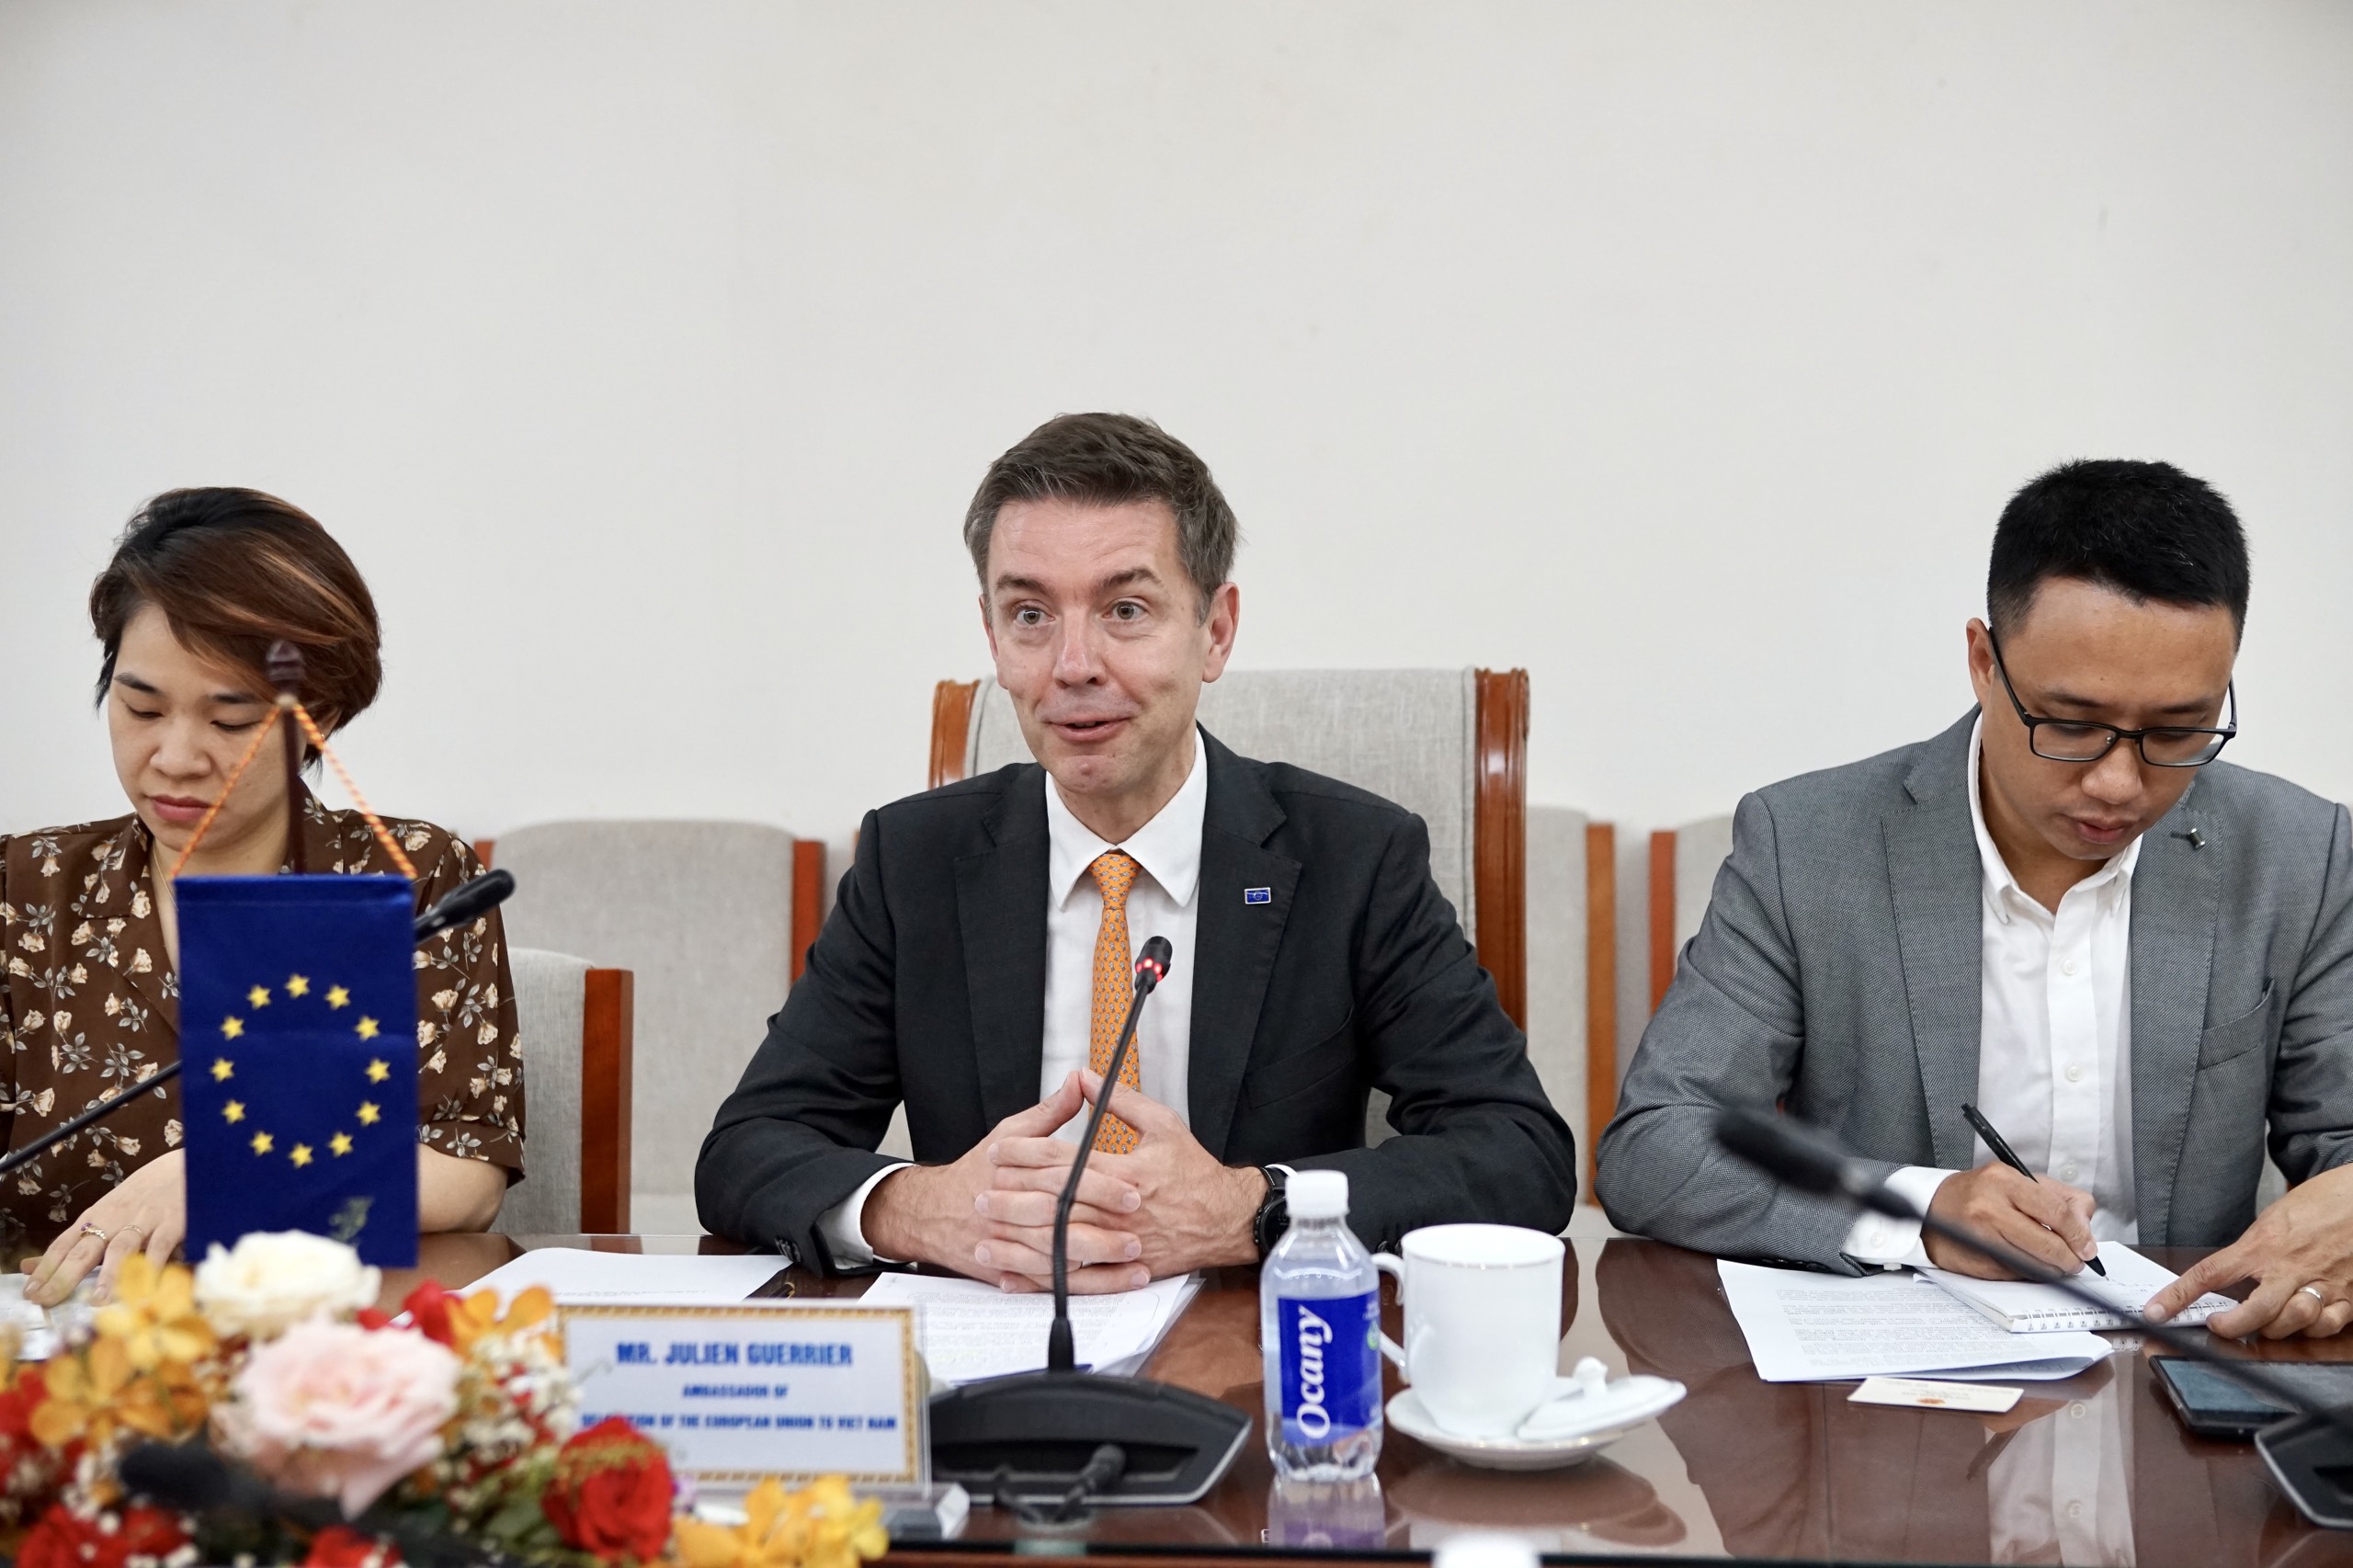 Ngài Julien Guerier, Đại sứ Liên minh Châu Âu tại Việt Nam (giữa ảnh) phát biểu tại buổi tiếp.